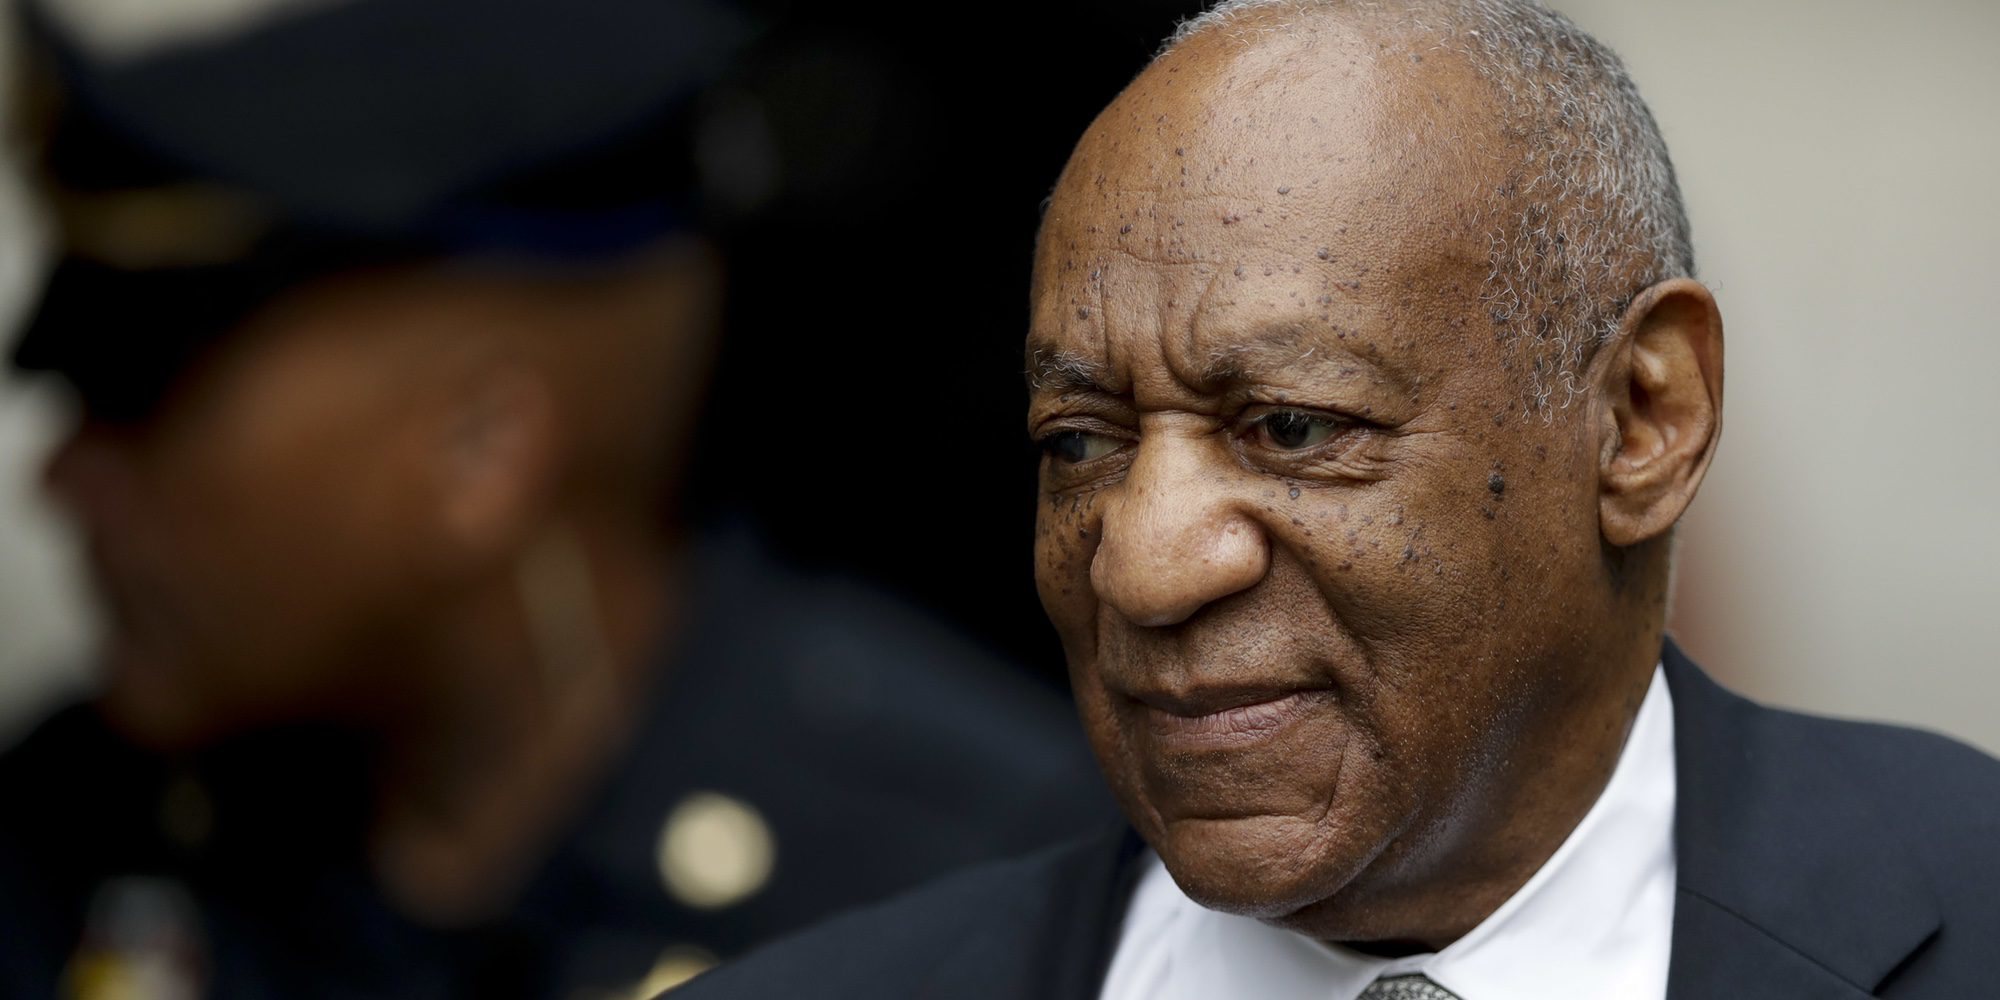 Bill Cosby, sobre la agresión sexual que le llevó a prisión: "Nunca me arrepentiré"